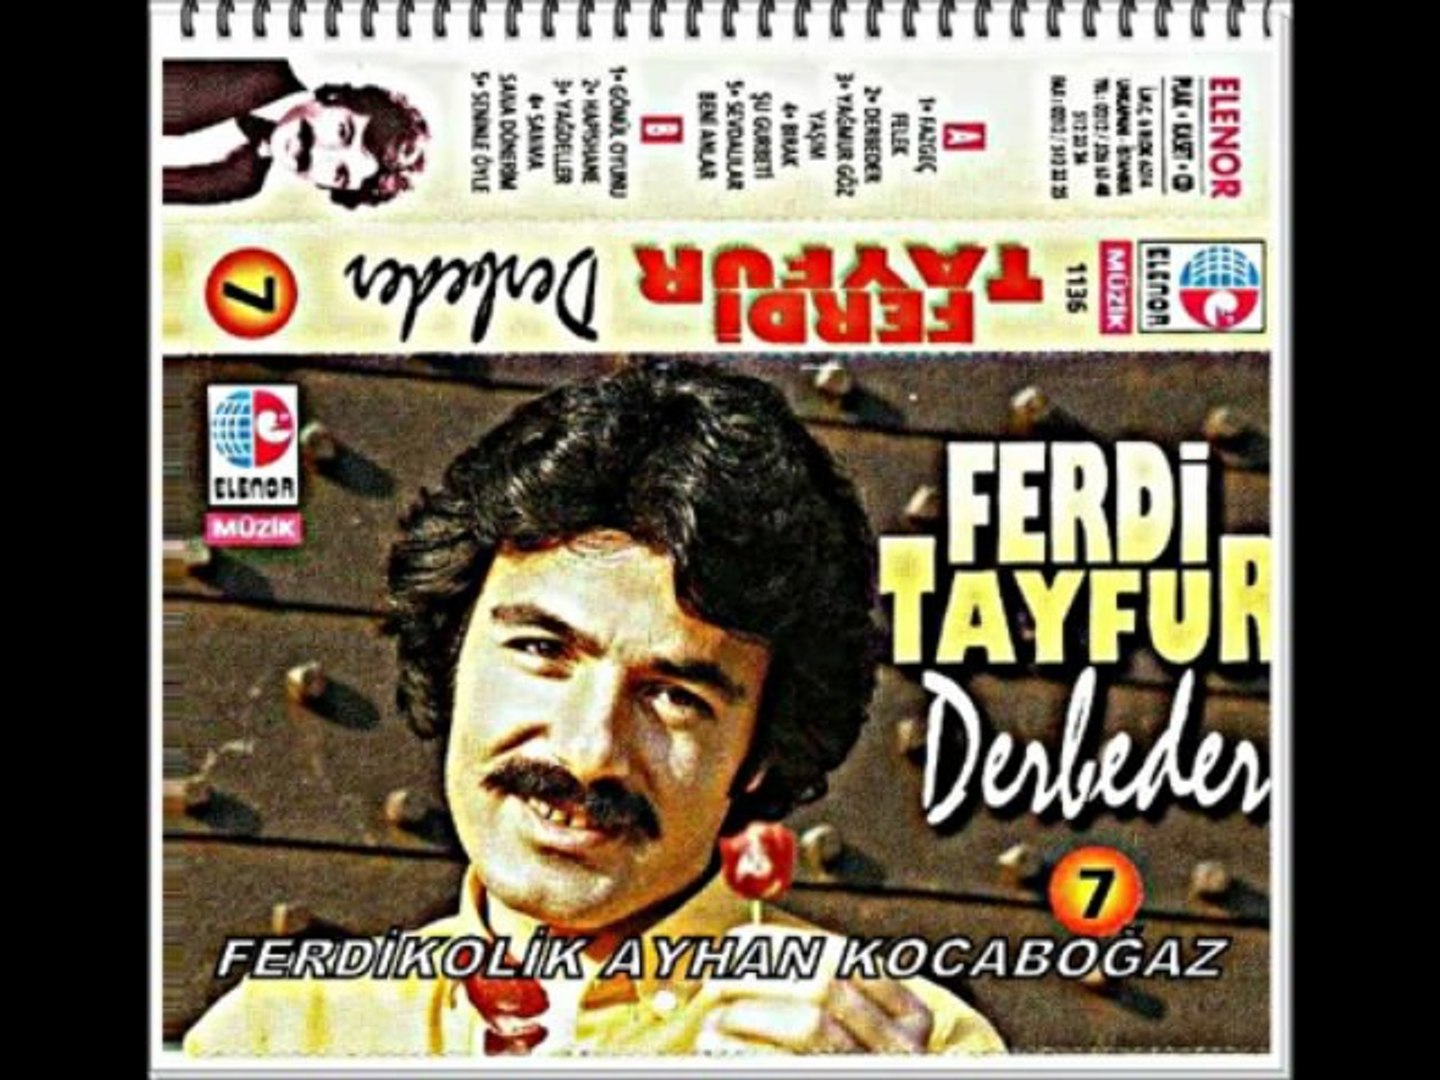 Ferdi Tayfur Derbeder Full Albüm Şarkıları sesliguller.com - Dailymotion  Video